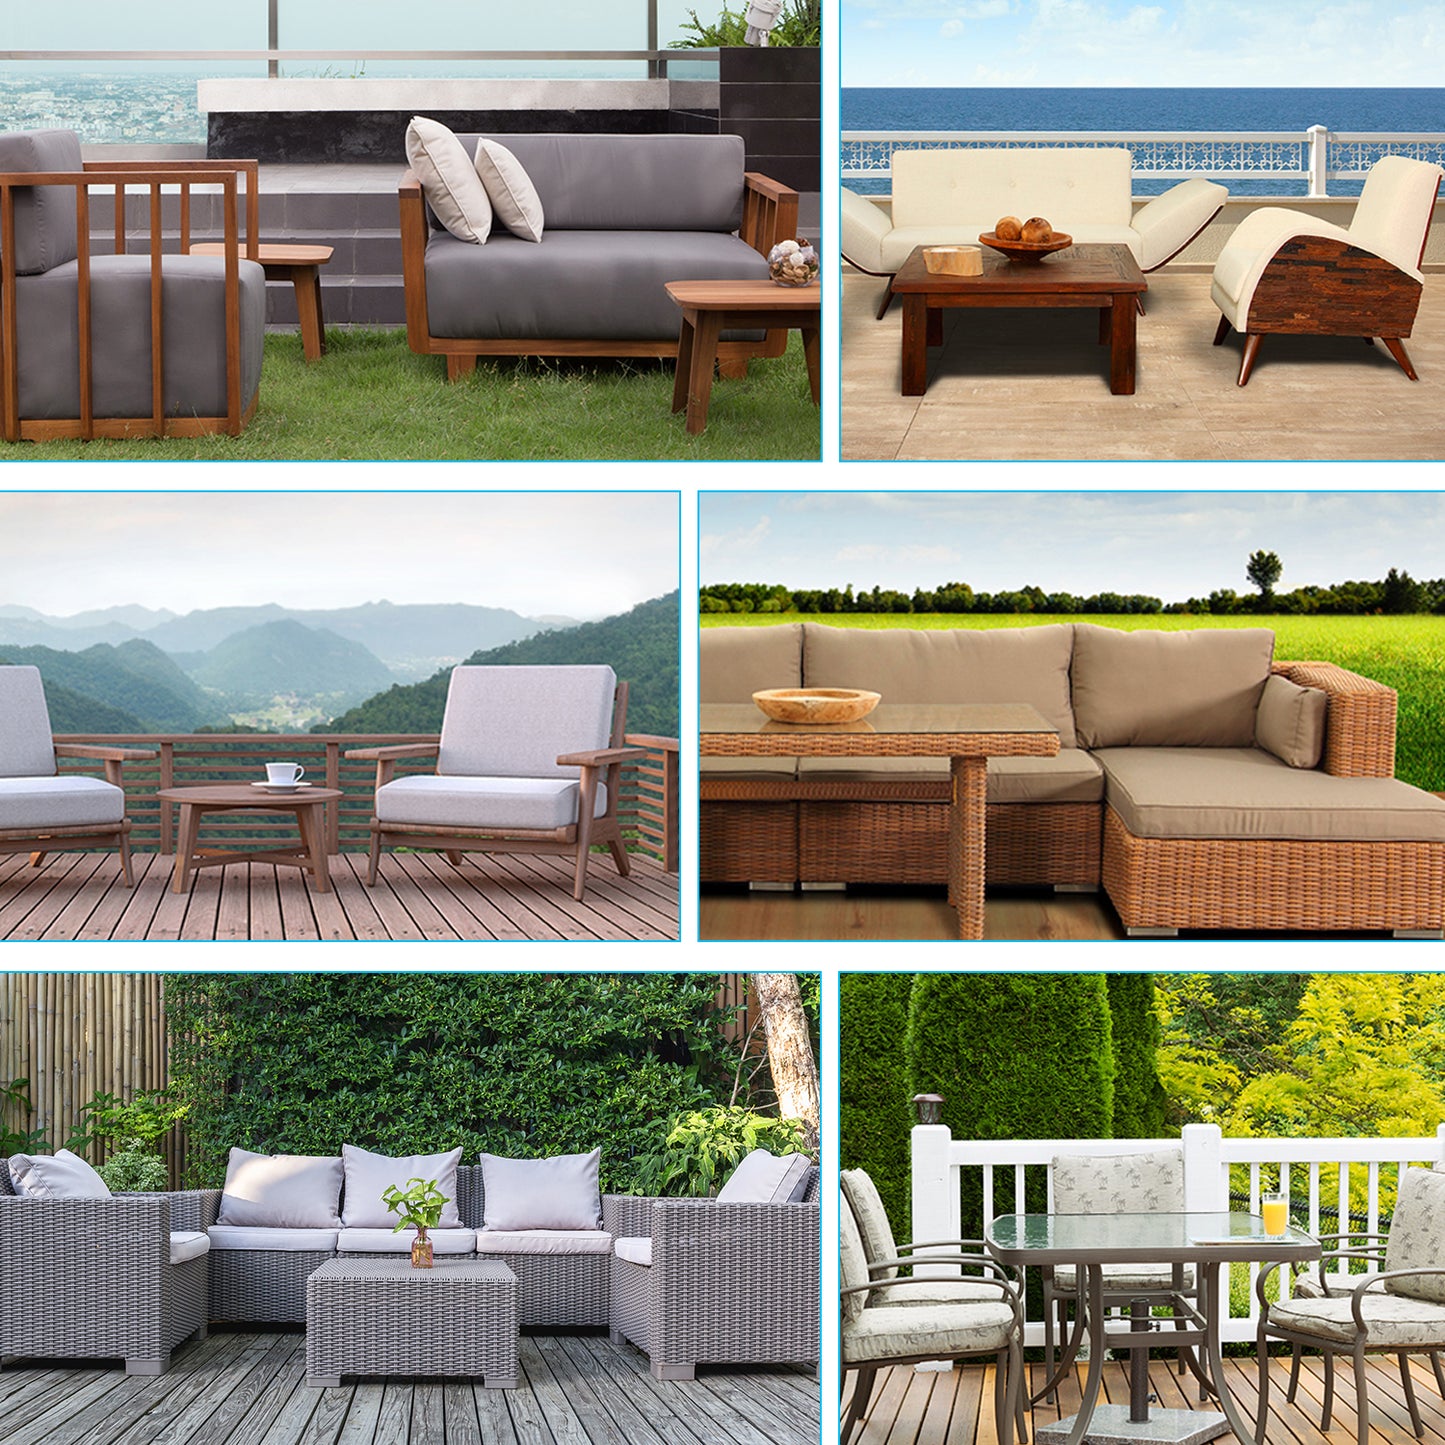 Mrrihand Garden Furniture Covers 270x180x90cm